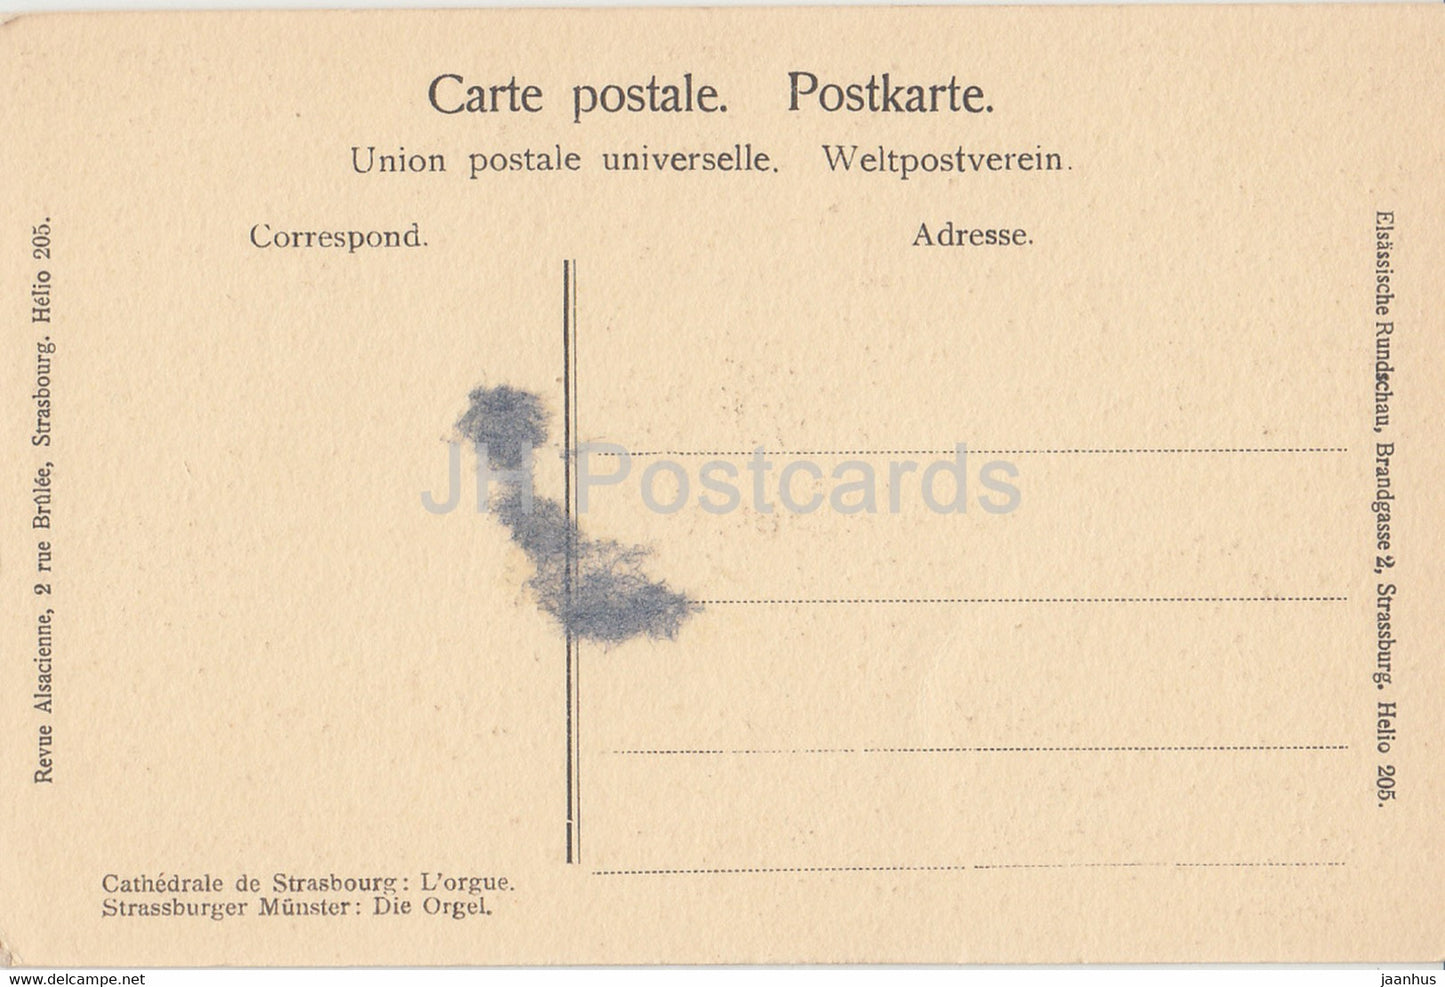 Straßburg - Straßburg - Kathedrale von Straßburg - L'Orgel - alte Postkarte - Deutschland - unbenutzt